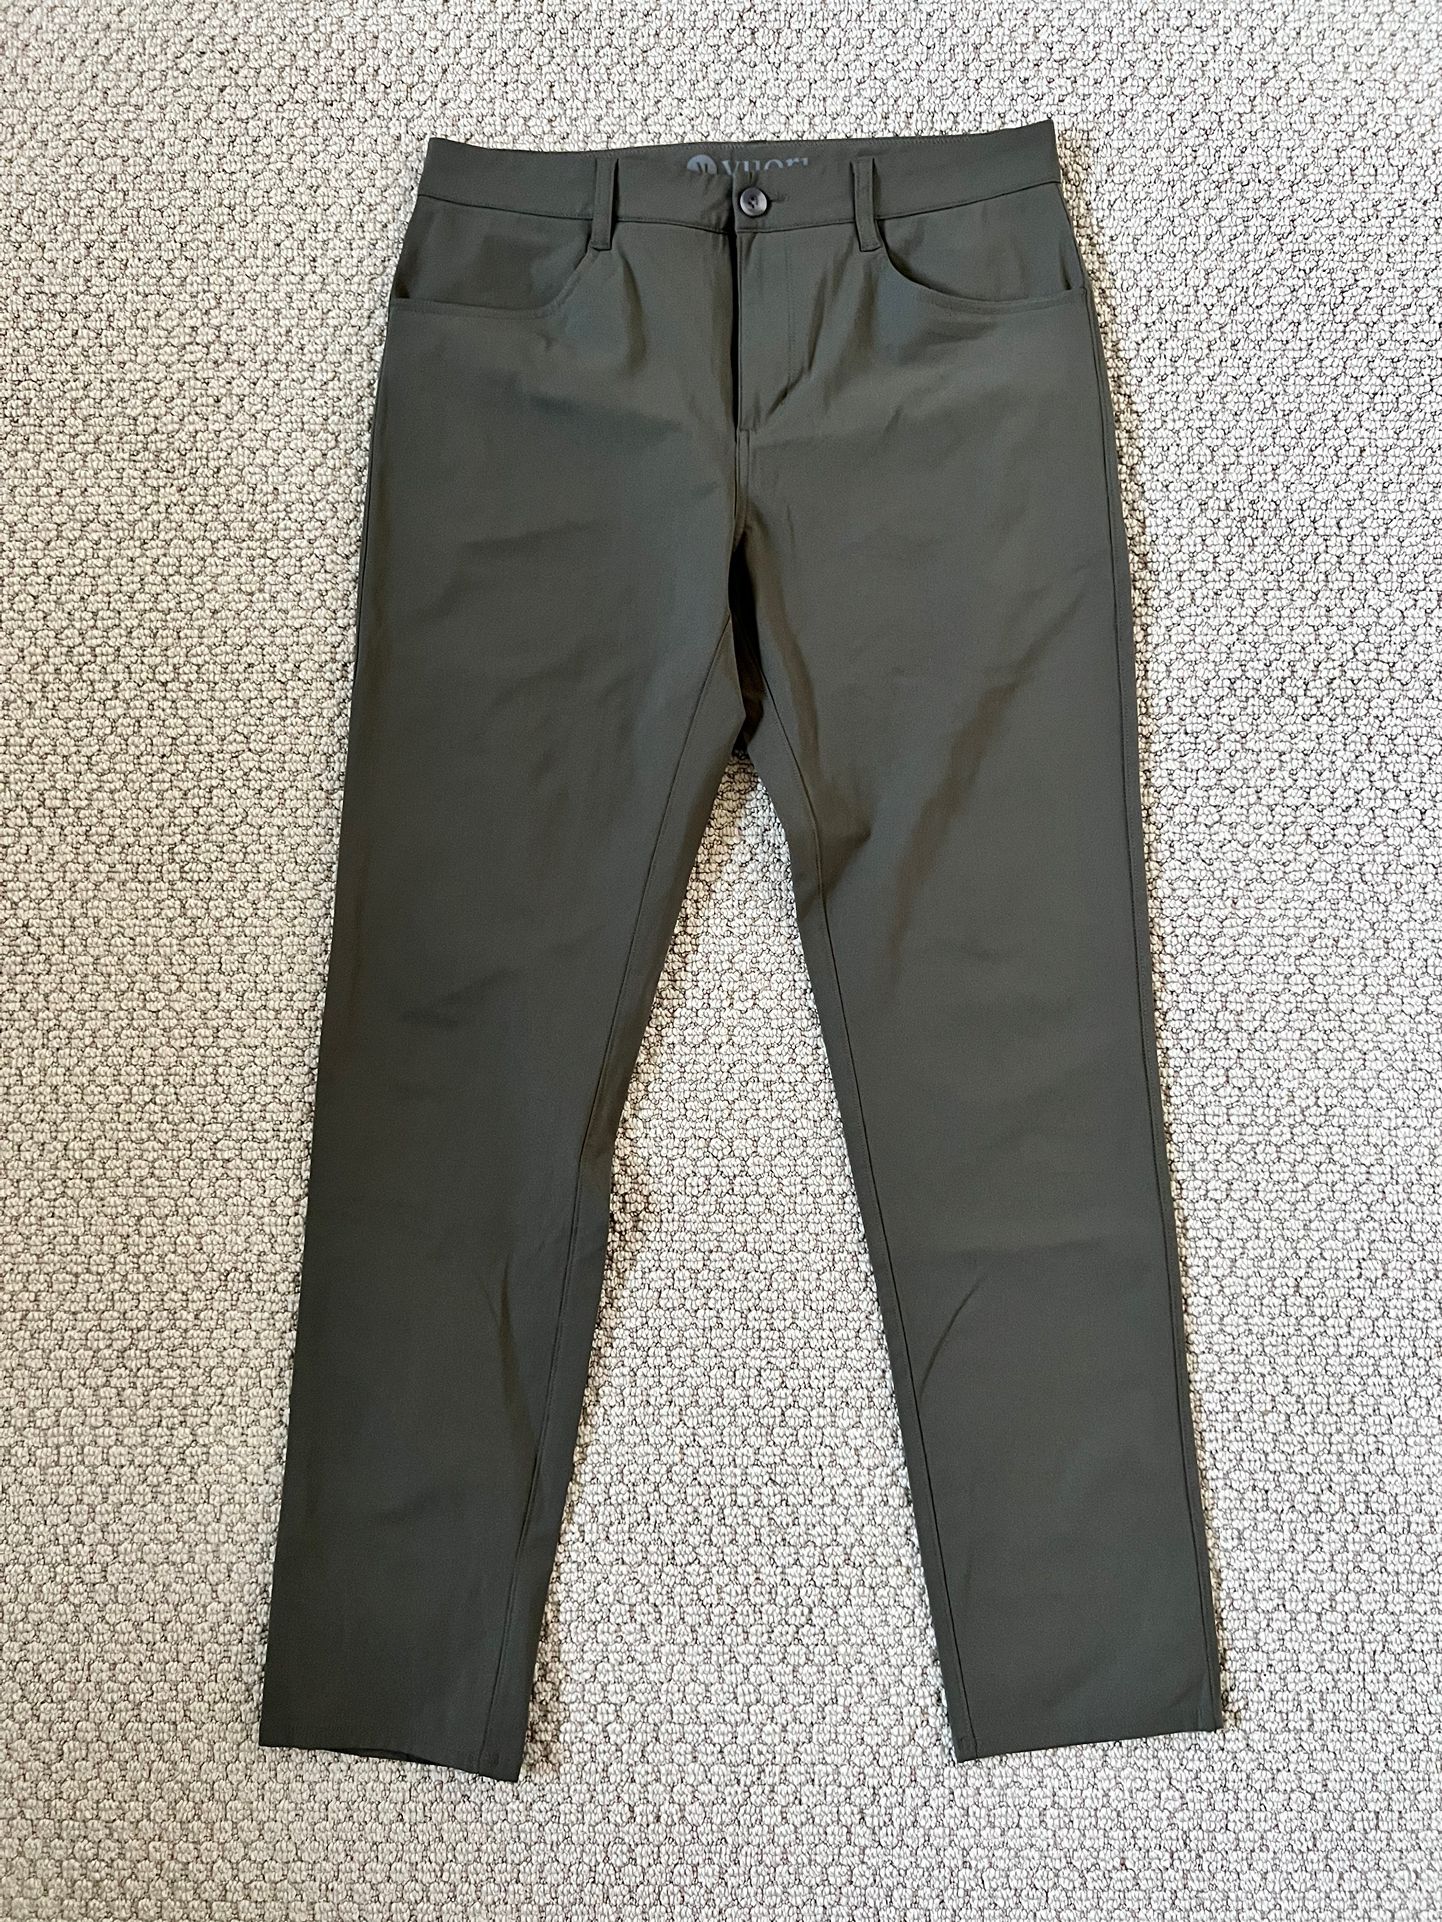 Vuori Meta Pants - Men’s 32 - Dark Oregano for Sale in Encinitas, CA ...